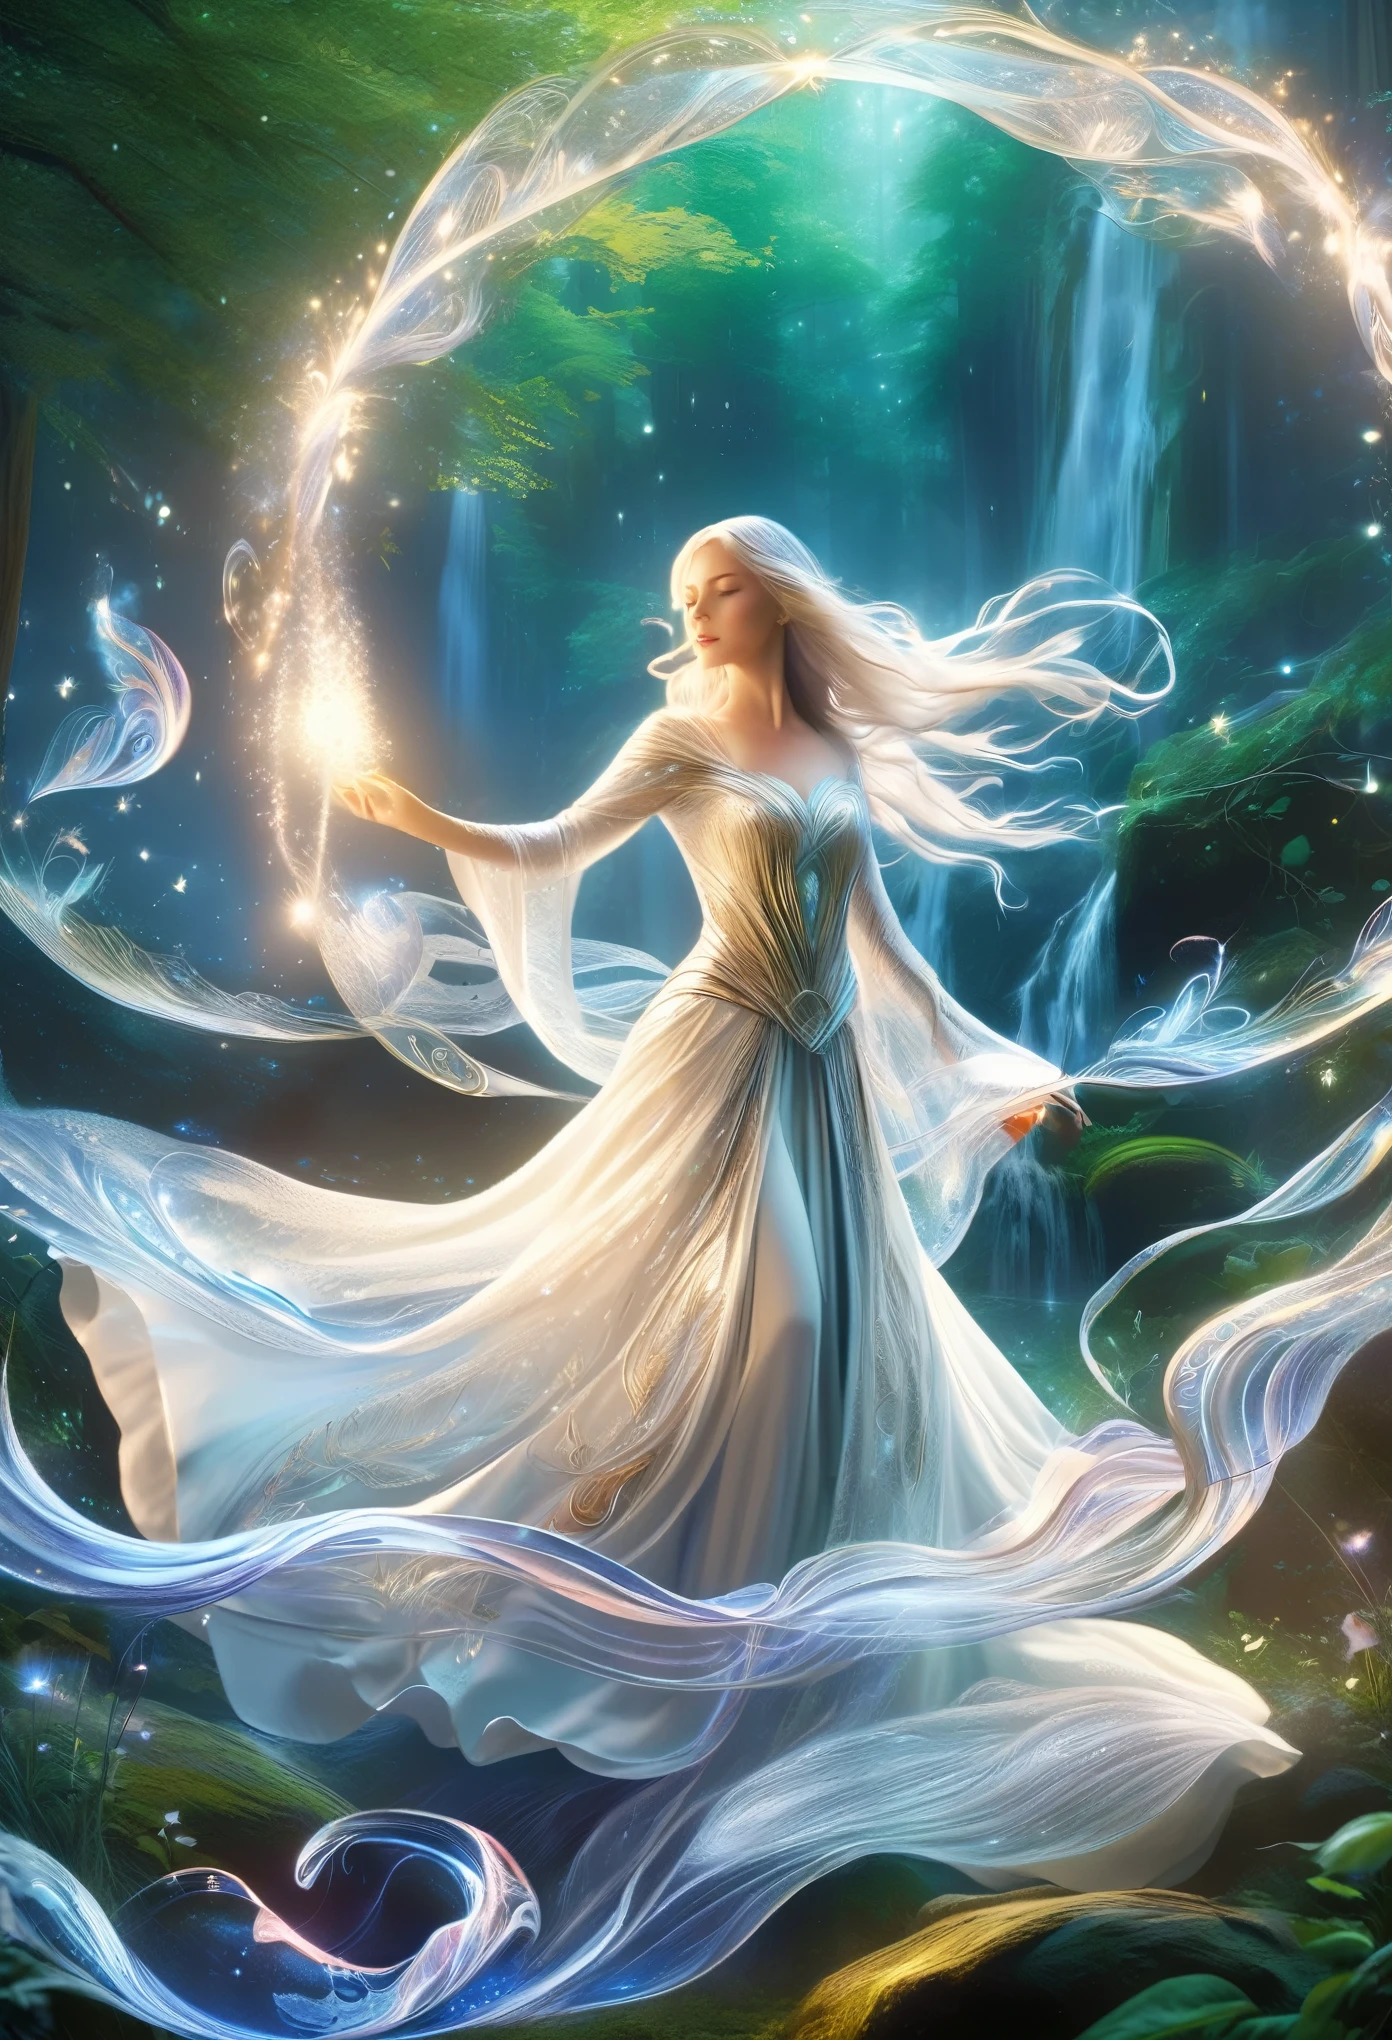 (最高品質,4K,8k,高解像度,傑作:1.2), 超詳細, (現実的,photo現実的,photo-現実的:1.37), 魔法の森の中心で, 天蓋を通して差し込む月光の柔らかな輝きに包まれて, 幽玄な美しさの人物像が立っている. 彼女はエルフの魔女です, 彼女の長い銀色の髪は、絹に織り込まれた月光の糸のように、彼女の細い体の周りできらめく波を描いて流れ落ちている。. 彼女の目, 魅惑的な虹色の色合いのブレンド, 異世界の光で輝く, 周囲の森の無数の色彩を映し出す. それらは木々と同じくらい古い魂への窓である, 彼女は幼少時代をはるかに超えた知恵と神秘に満ちていた. 銀糸の複雑な模様で飾られた流れるような白いローブを身にまとい, 彼女は優雅で気取らない動きをする. 一つ一つの動きがダンス, 滑らかな石の上を流れる水のように空気中に波紋を呼ぶ流動的な動き. 彼女が繊細な手を空に上げると, 彼女の周りの空気は魔法のエネルギーでパチパチと音を立てている, 森の本質が彼女の呼びかけに応えている. 彼女の唇からは液体の銀のように力強い言葉が溢れ出る, 夜の静寂に心に残るメロディーを響かせる古代の呪文. それぞれの言葉で, 魔法のエネルギーの触手が彼女の周りを渦巻き始める, 光と影がきらめく渦を織りなす. 渦巻く大渦の中で形が形成され始める, 純粋な魔法から生まれた幻の生き物たちが彼女の声のリズムに合わせて踊る. そして彼女が呪文のクライマックスに達すると, 彼女の声は最高潮に達する, 森を力と驚きのシンフォニーで満たす. 最後に手を振り, 彼女は呪文を解き放つ, 魔法のエネルギーが集まって光の爆発を起こし、千の星のように暗闇を照らします。.(art by Amano Yoshitaka:1.3)